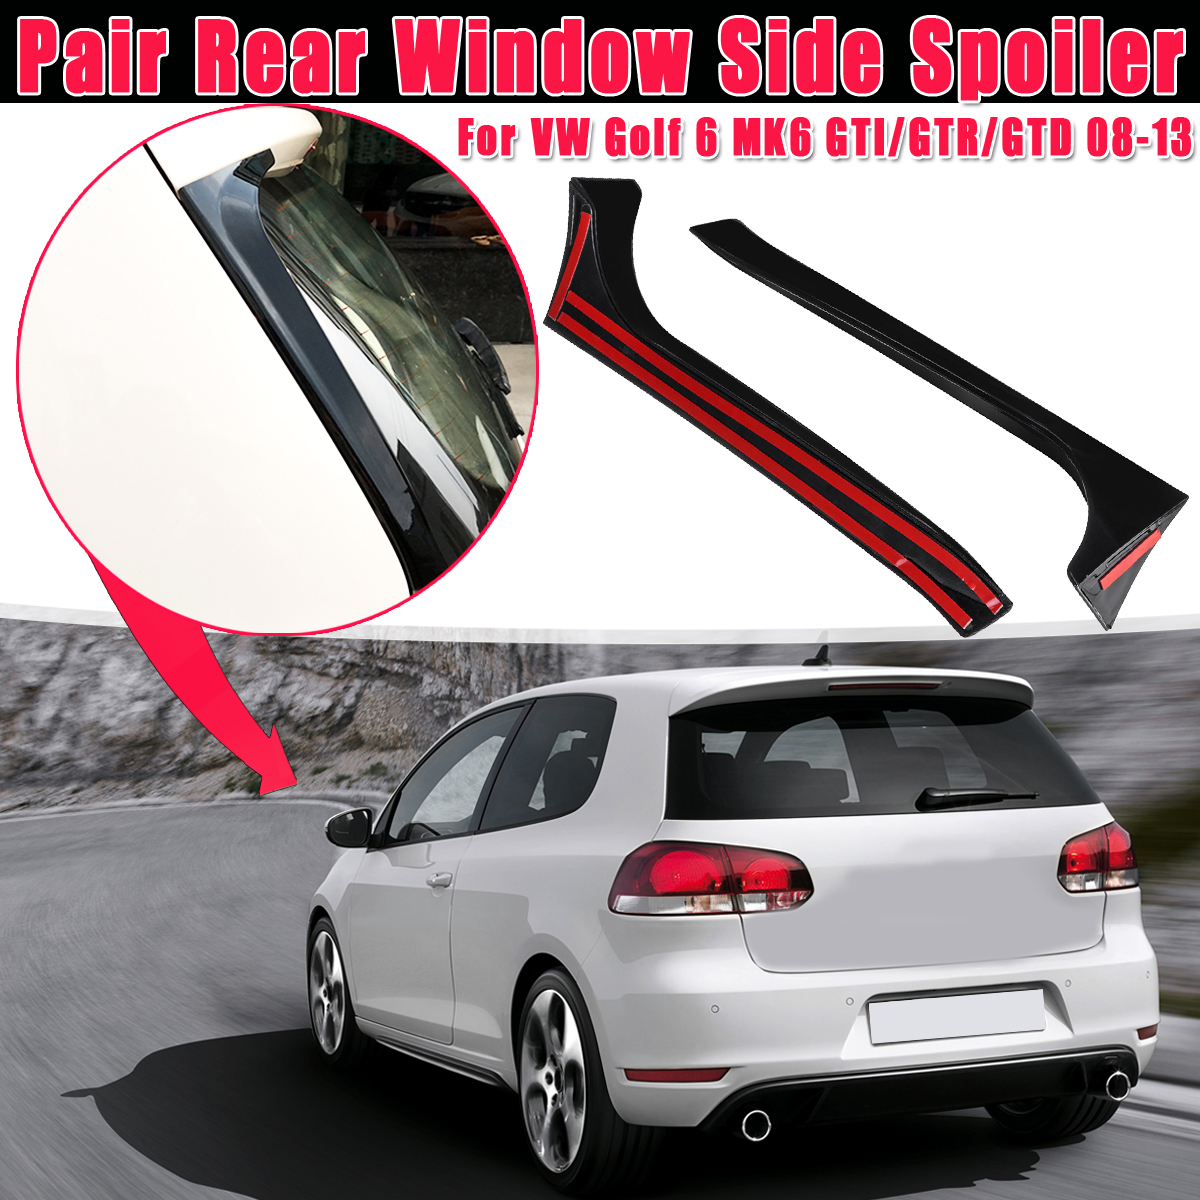 2Pcs Car Rear Window Side Spoiler Wing Canard Canards Splitter For VW Golf 6 MK6 GTI/GTR/GTD 08-13